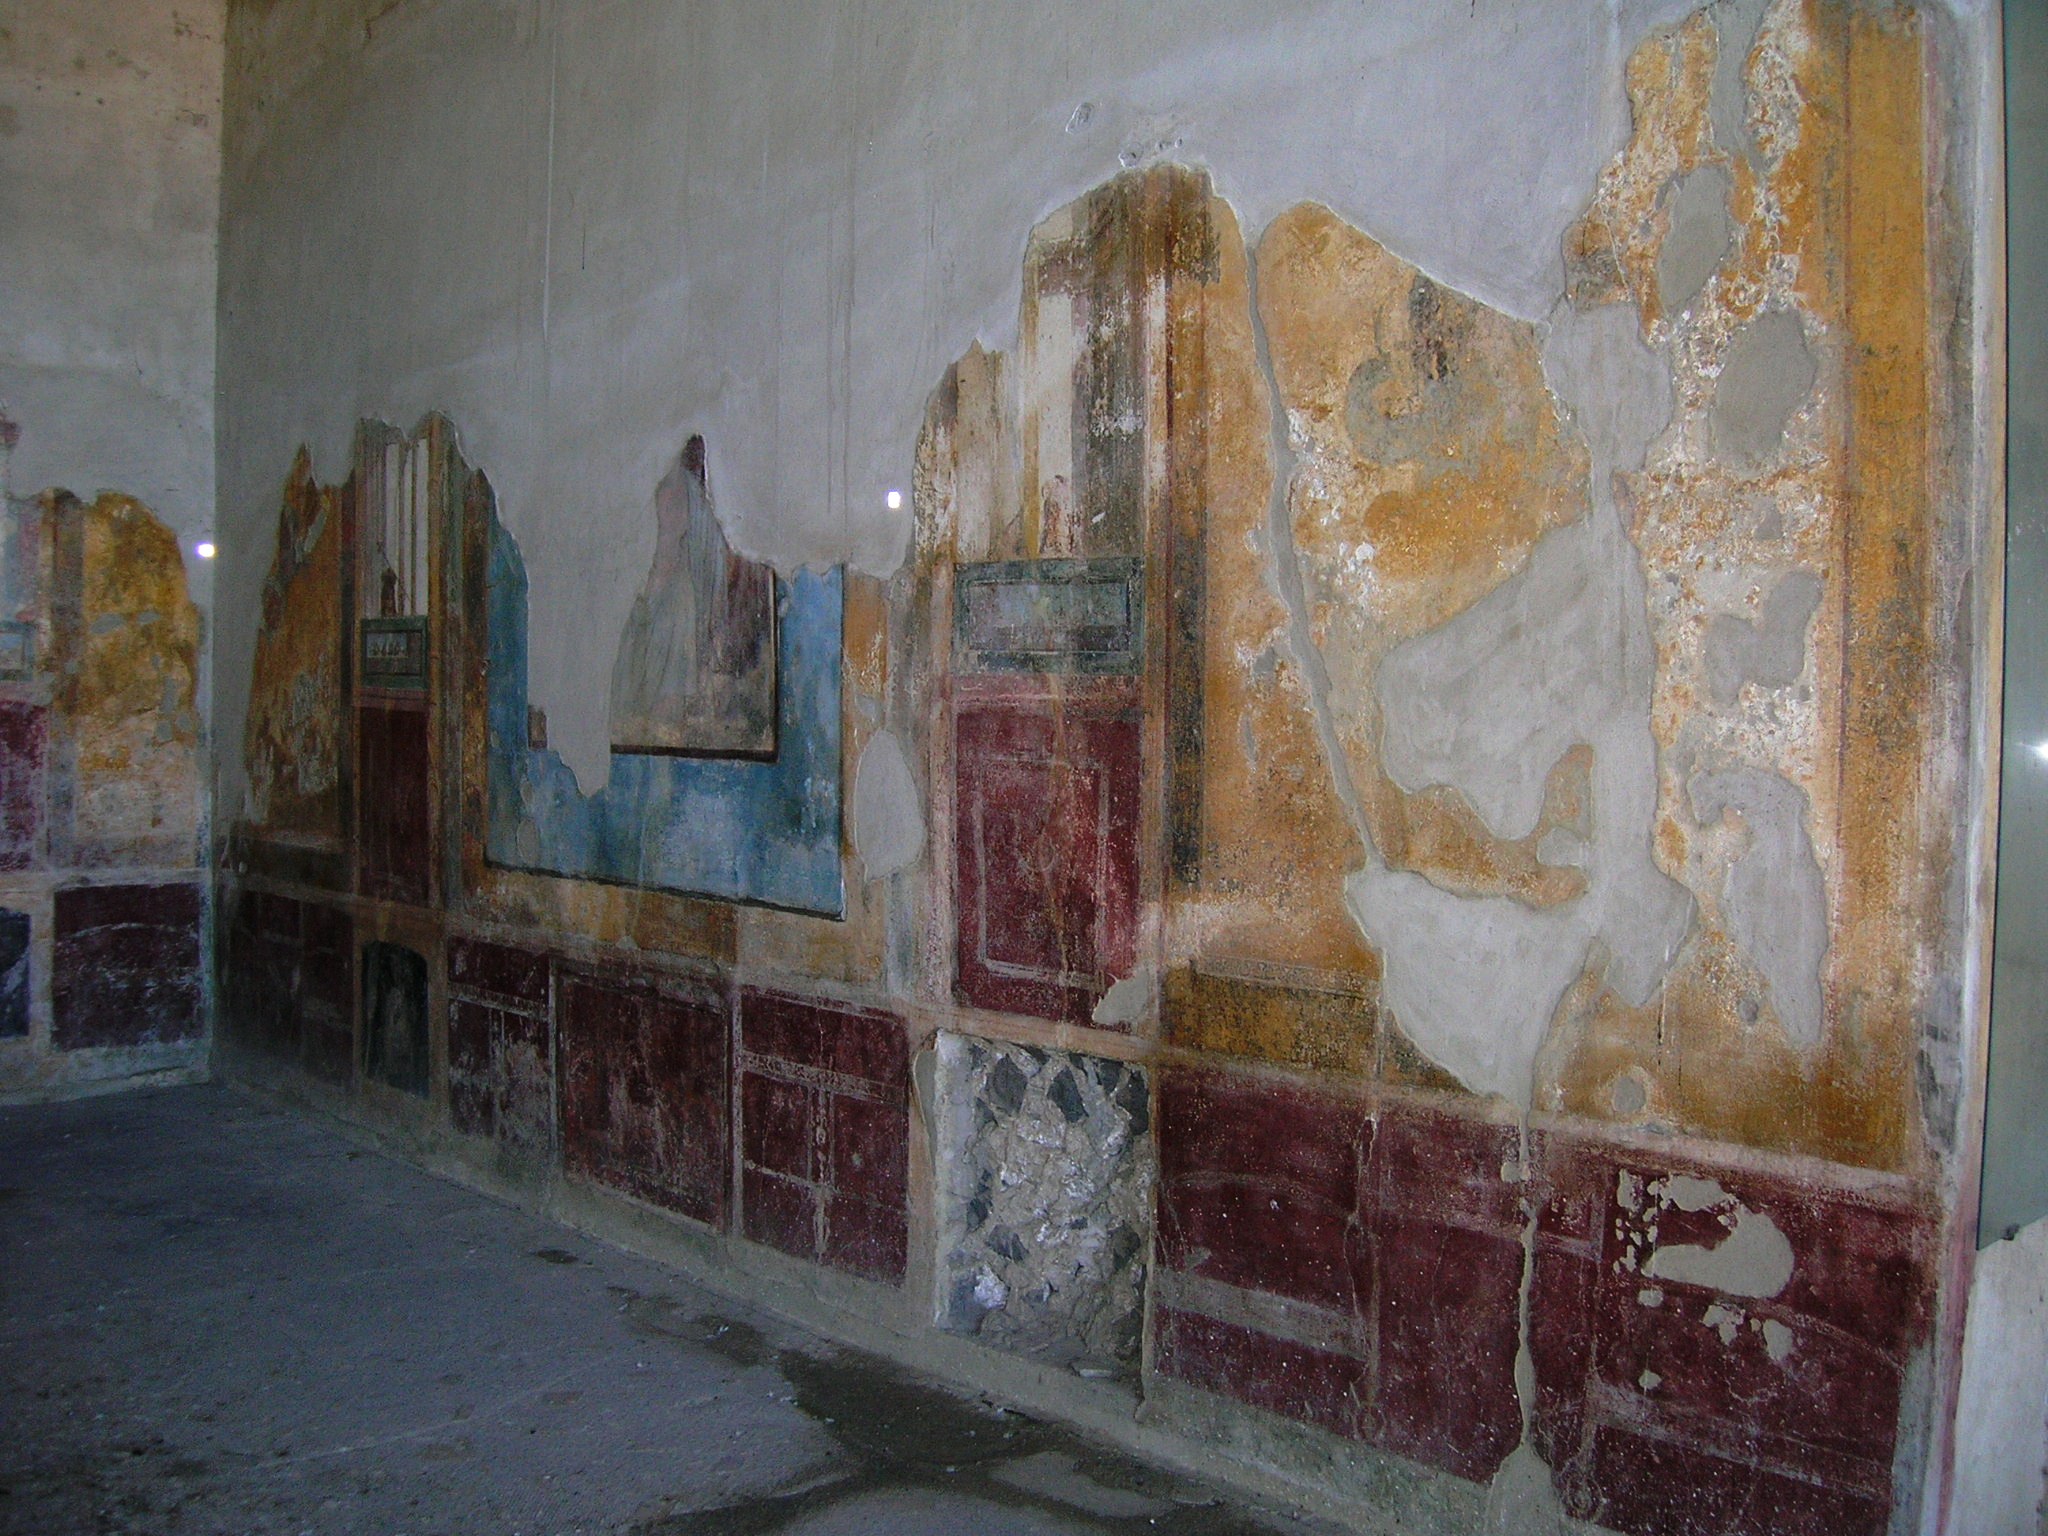 Villa di Arianna Stabia壁画墙:墙上褪色的画作，生动的蓝色、红色和金色是这幅无法辨认的画作中剩下的所有东西。